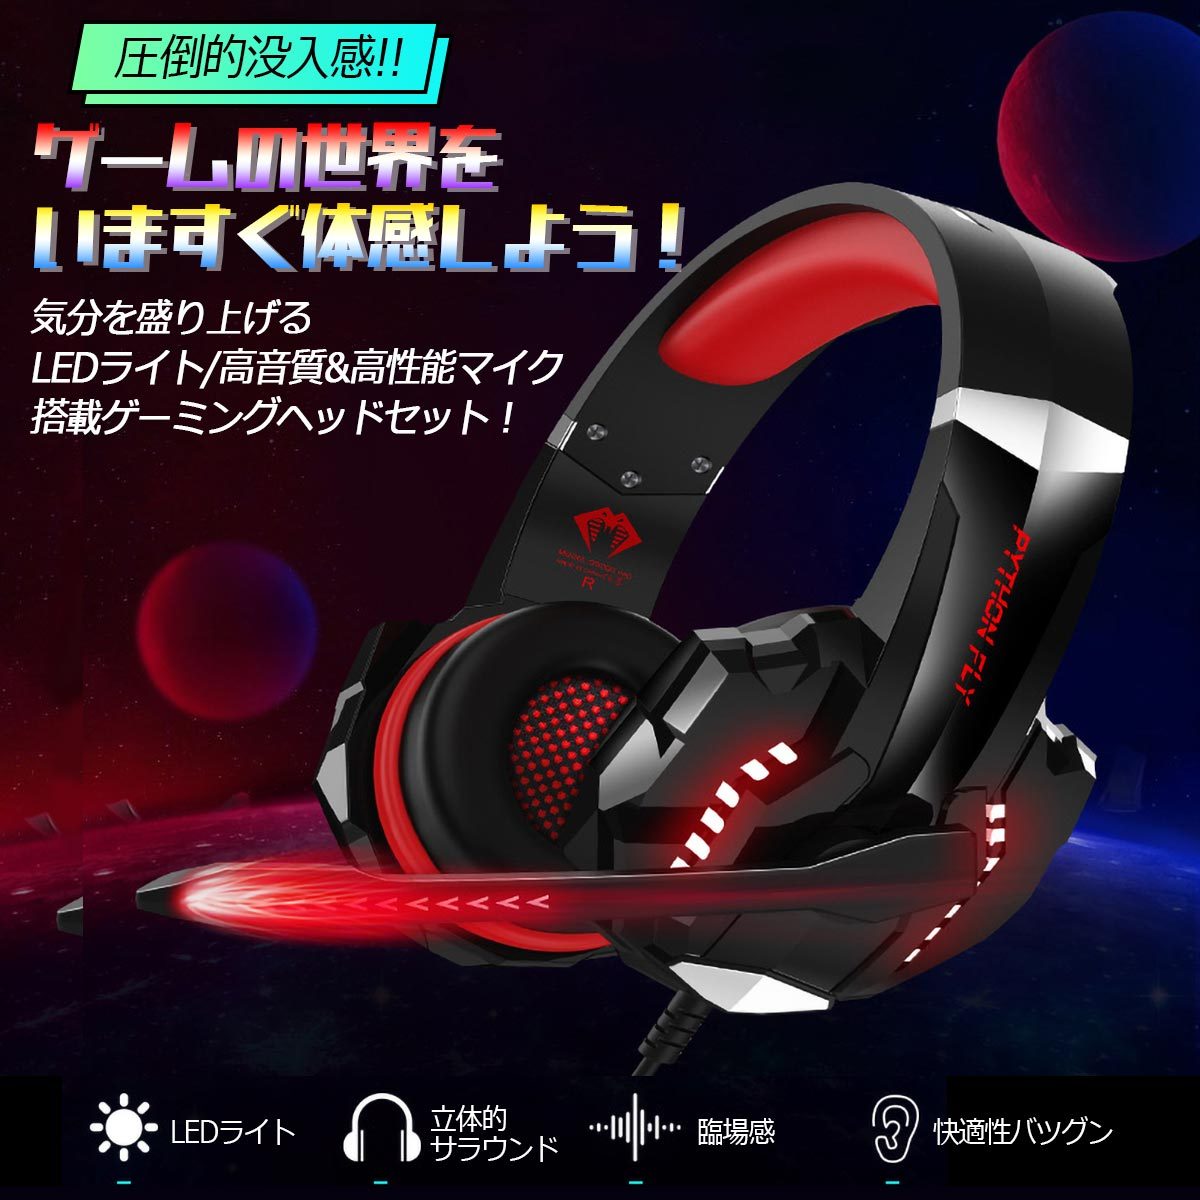  headset наушники наушники проводной ge-ming headset дешевый Mike ge-ming наушники шум отмена кольцо ребенок USB рекомендация 